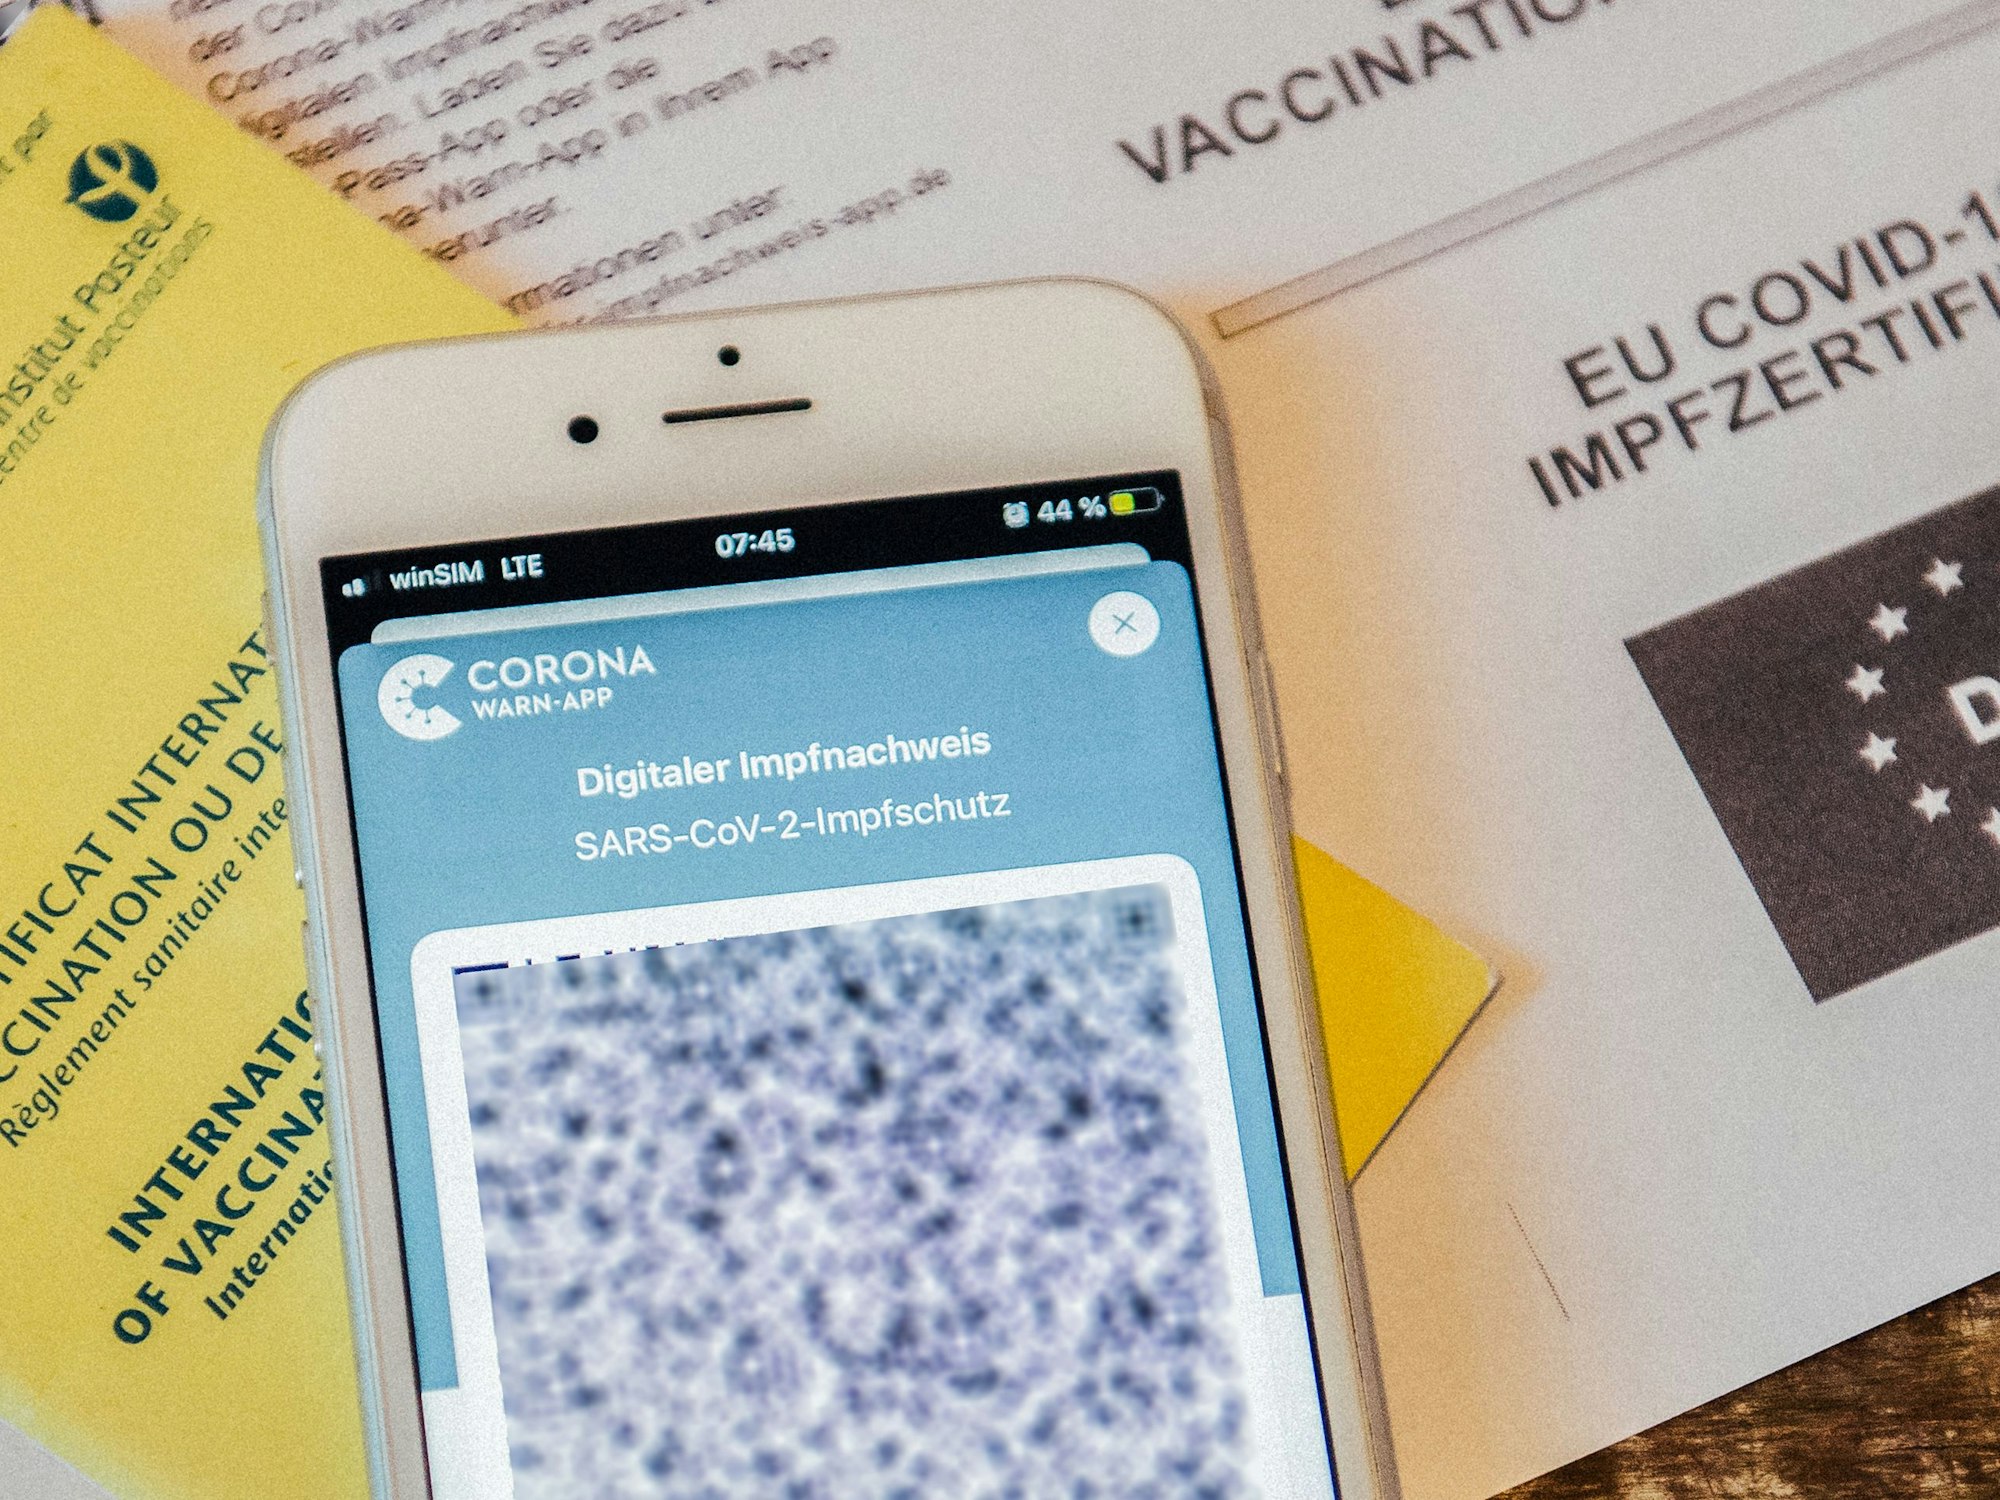 In dieser Corona-Warn-App ist das EU-Covid-19 Impfzertifikat erfolgreich eingescannt worden. Das Bild ist am 14. Juni 2022 entstanden.